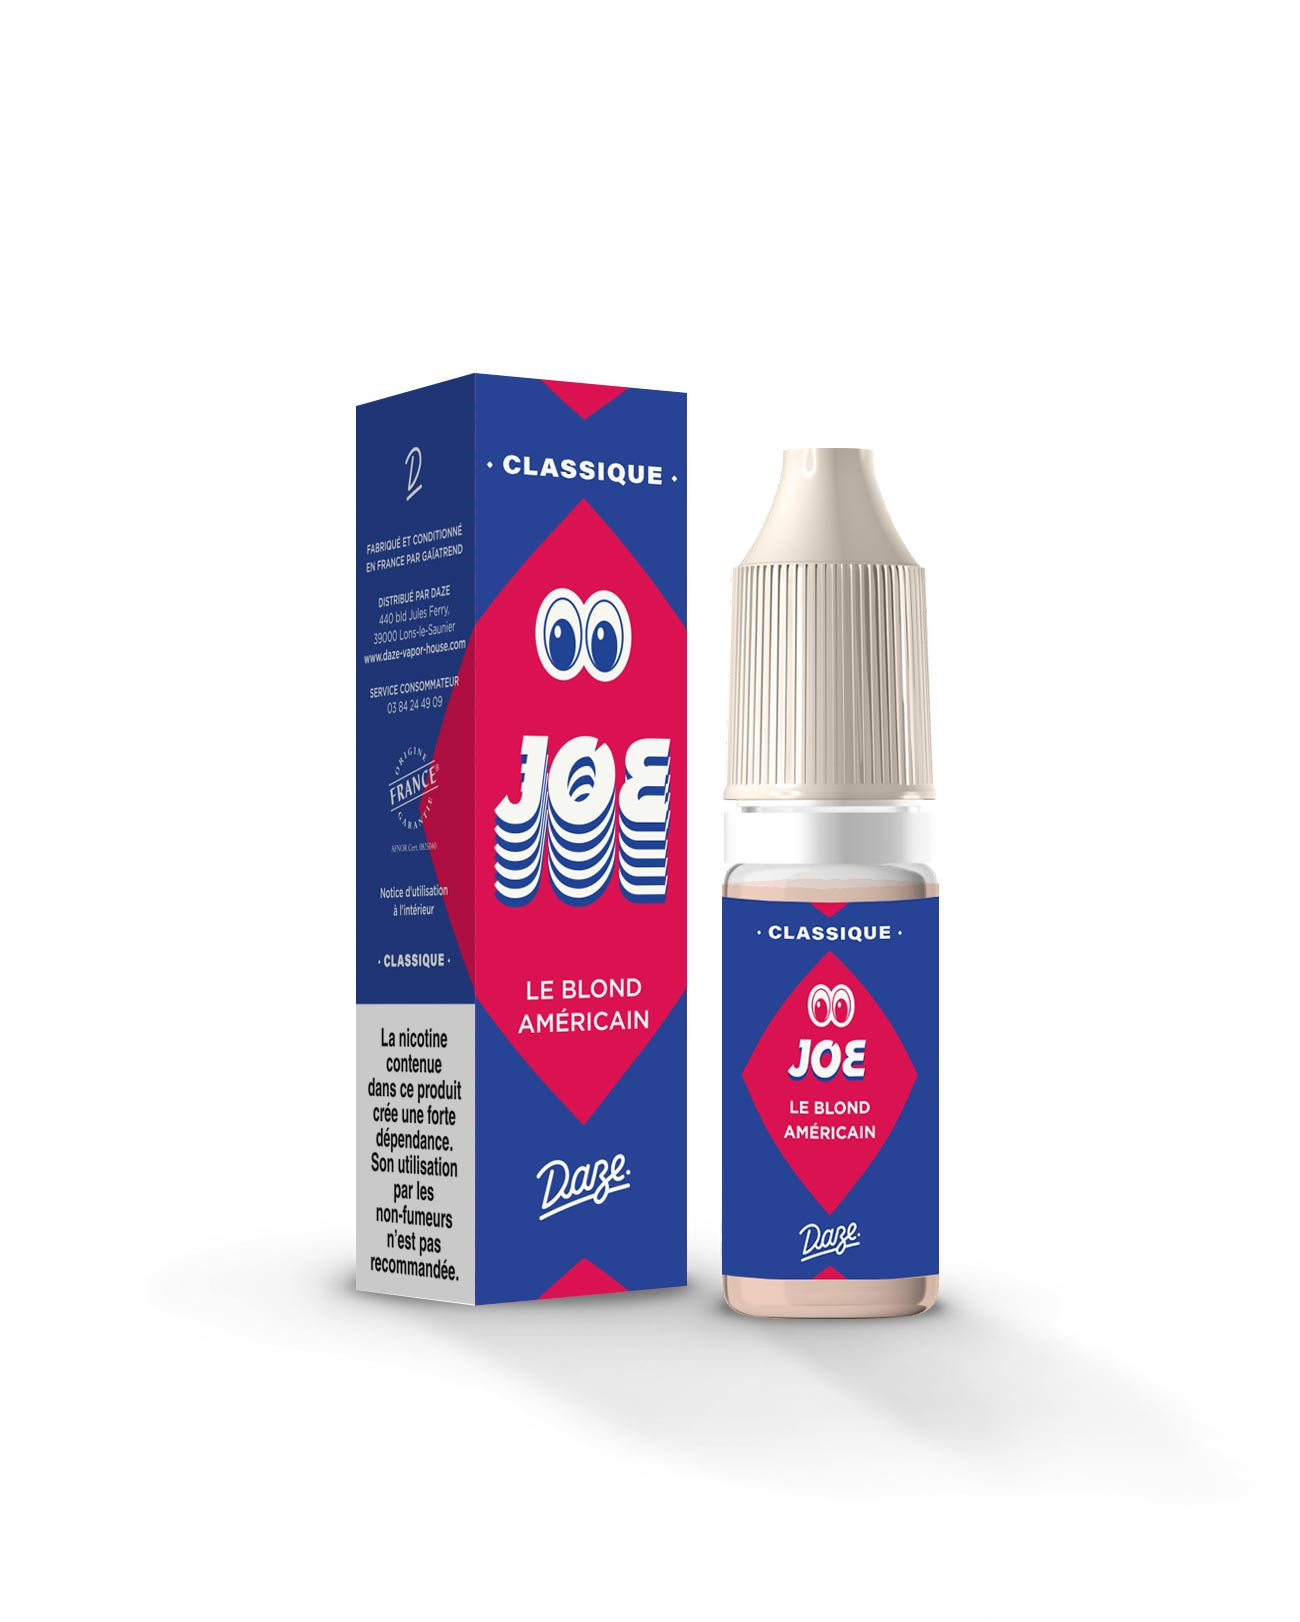 Packaging e-liquide classic blond 10ml Daze Joe pour arrêter de fumer